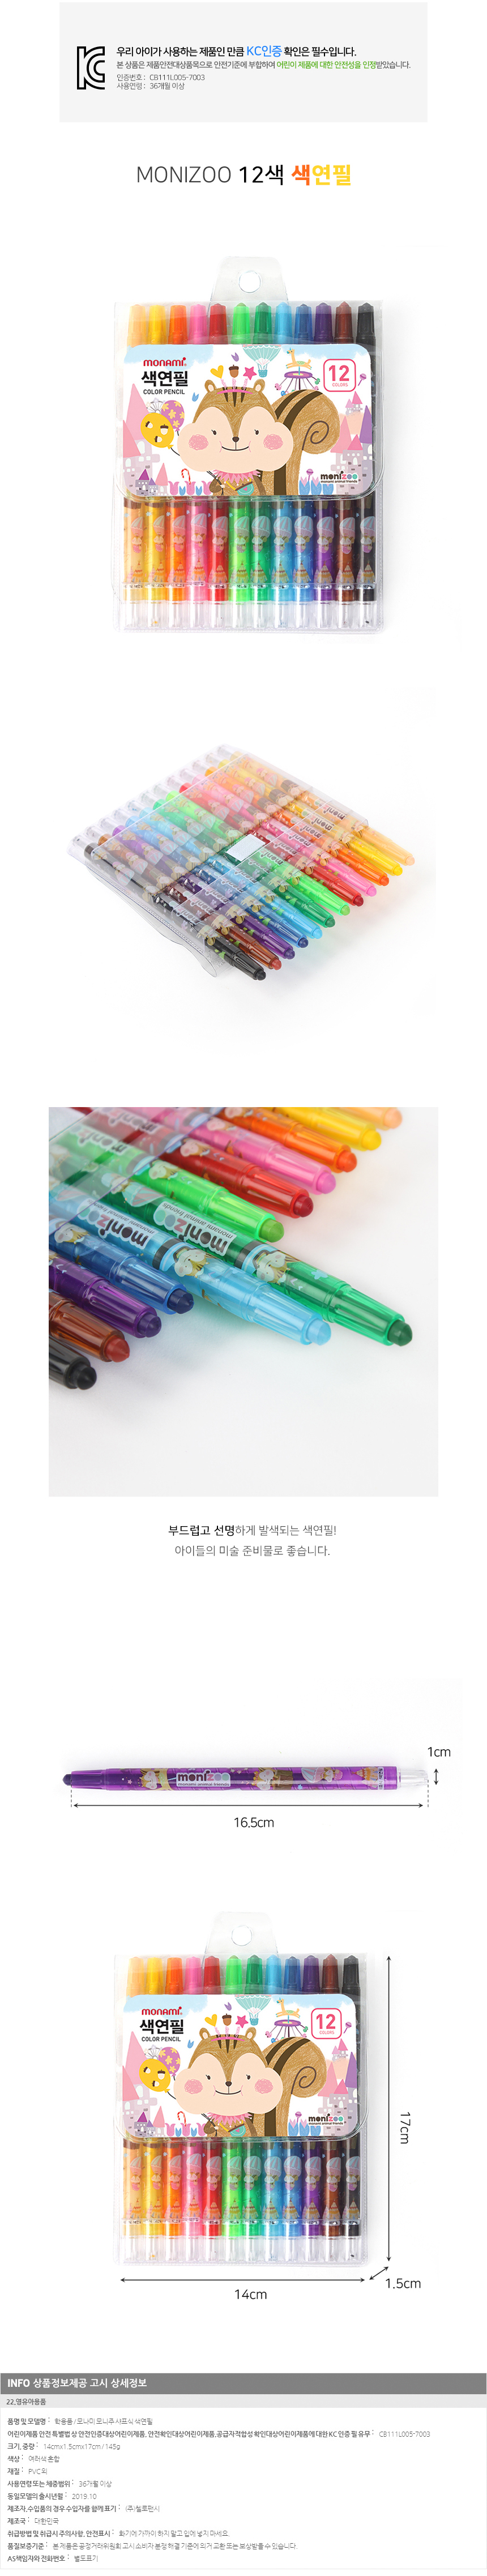 모니주 샤프식 12 색연필 /아동미술용품 그리기도구